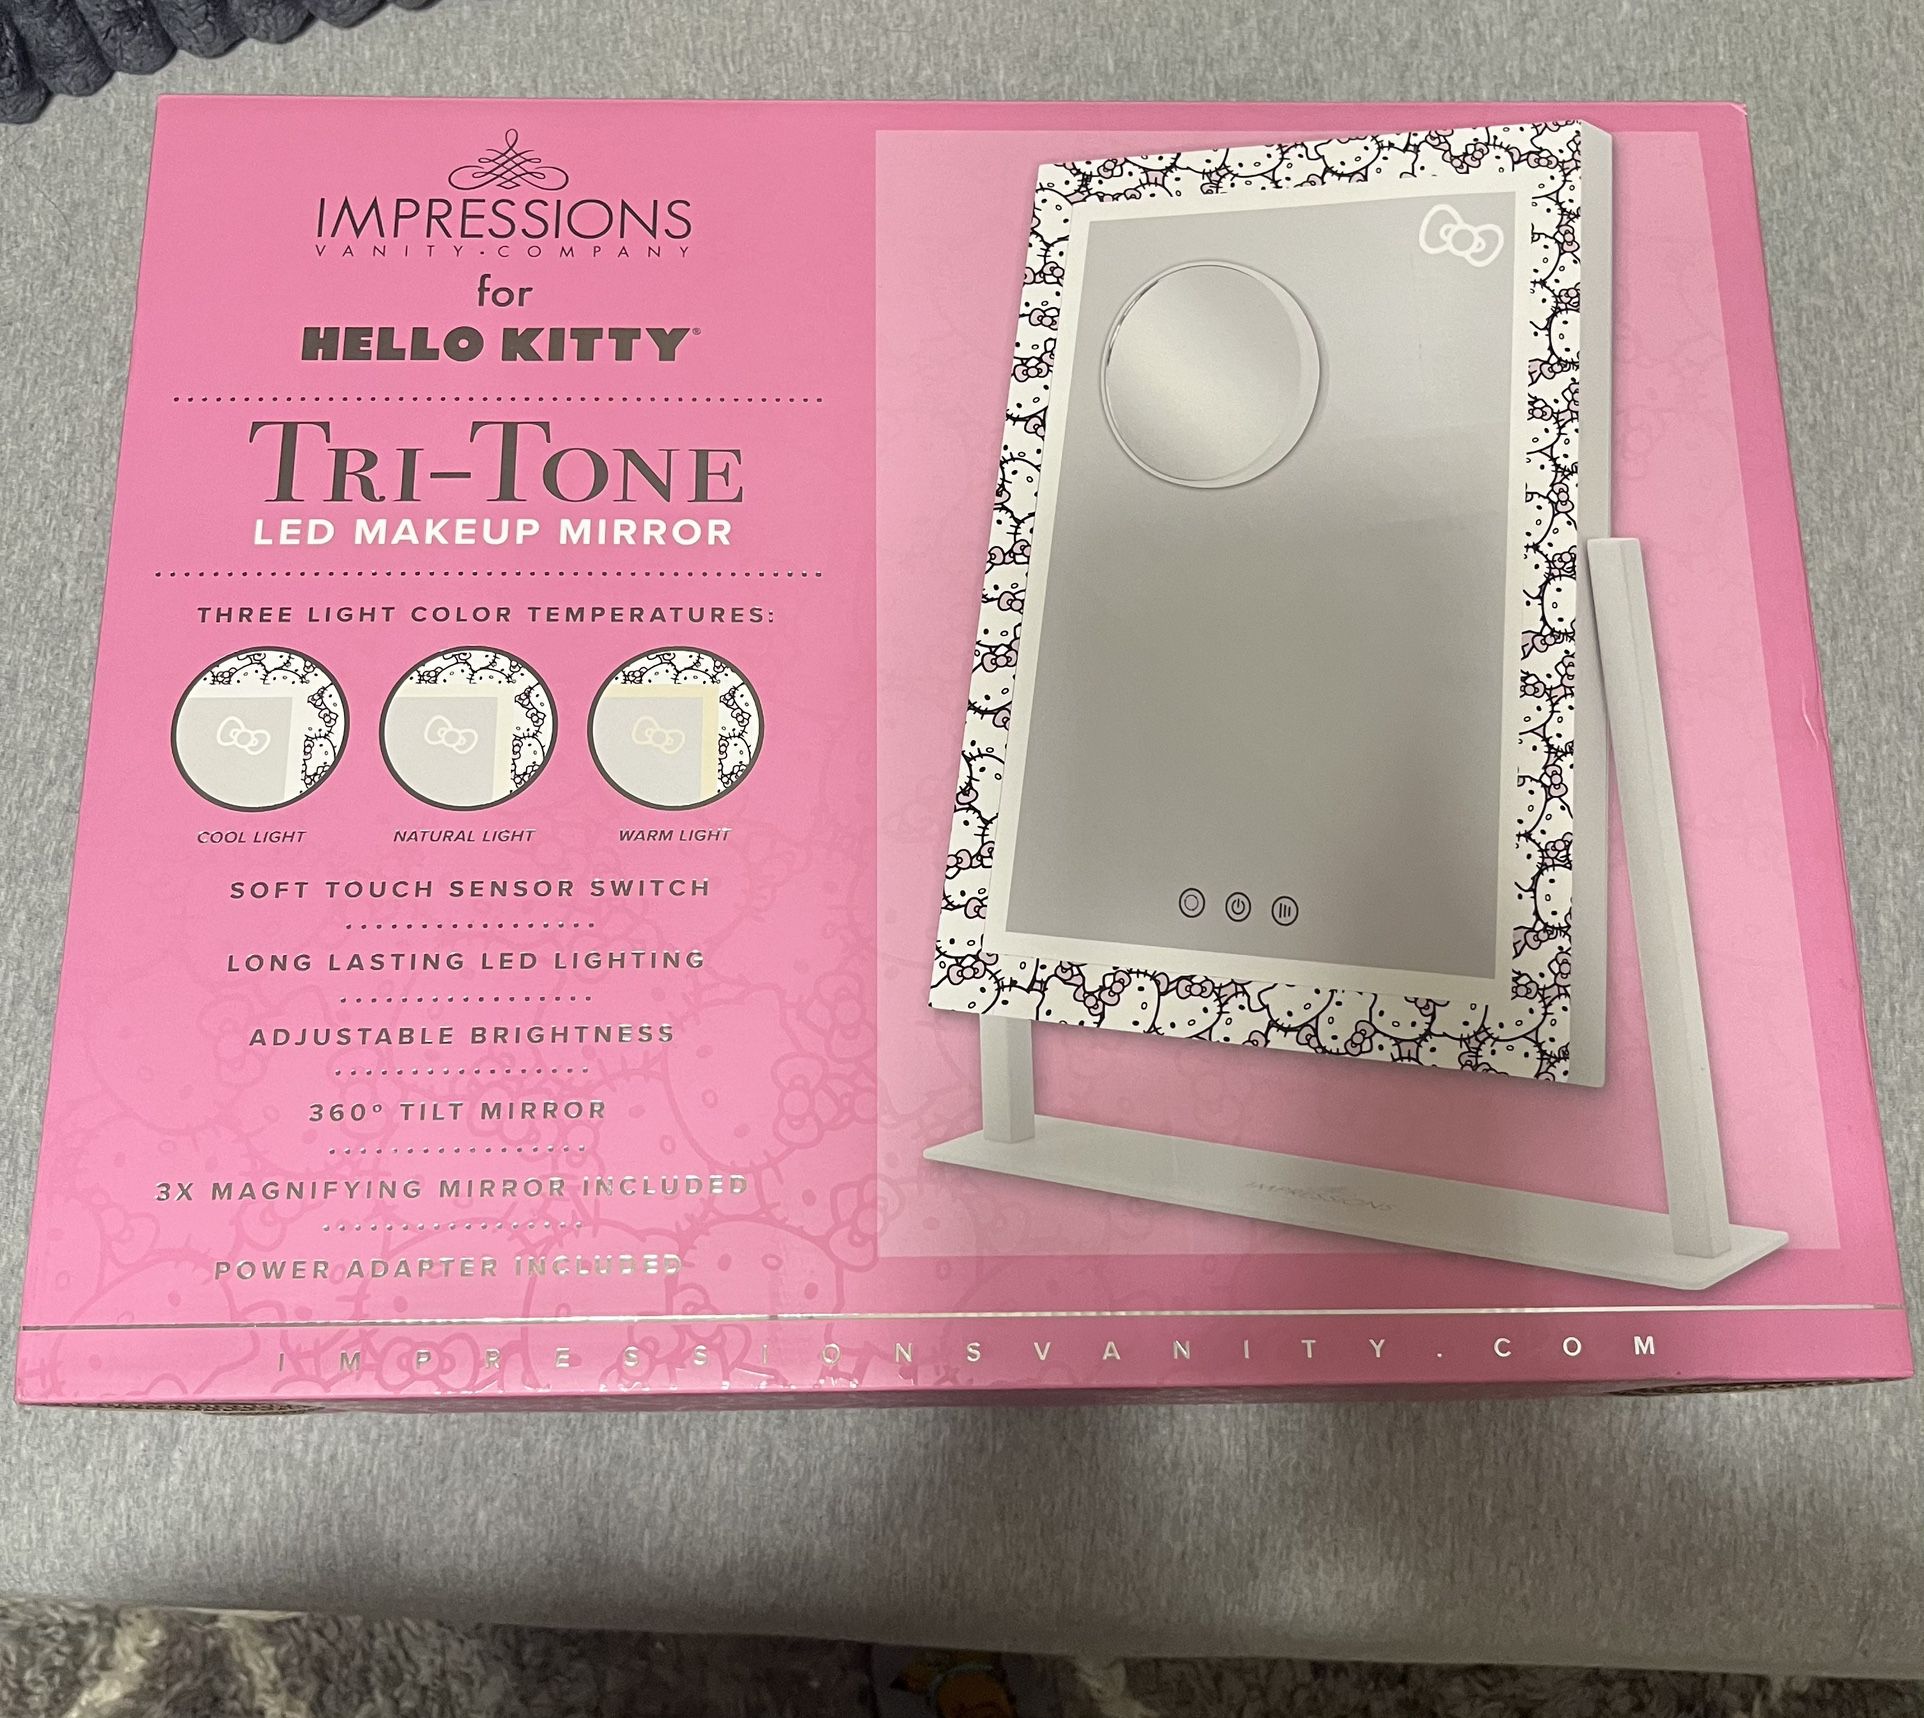 Hello Kitty Tri-tone LED Makeup Mirror